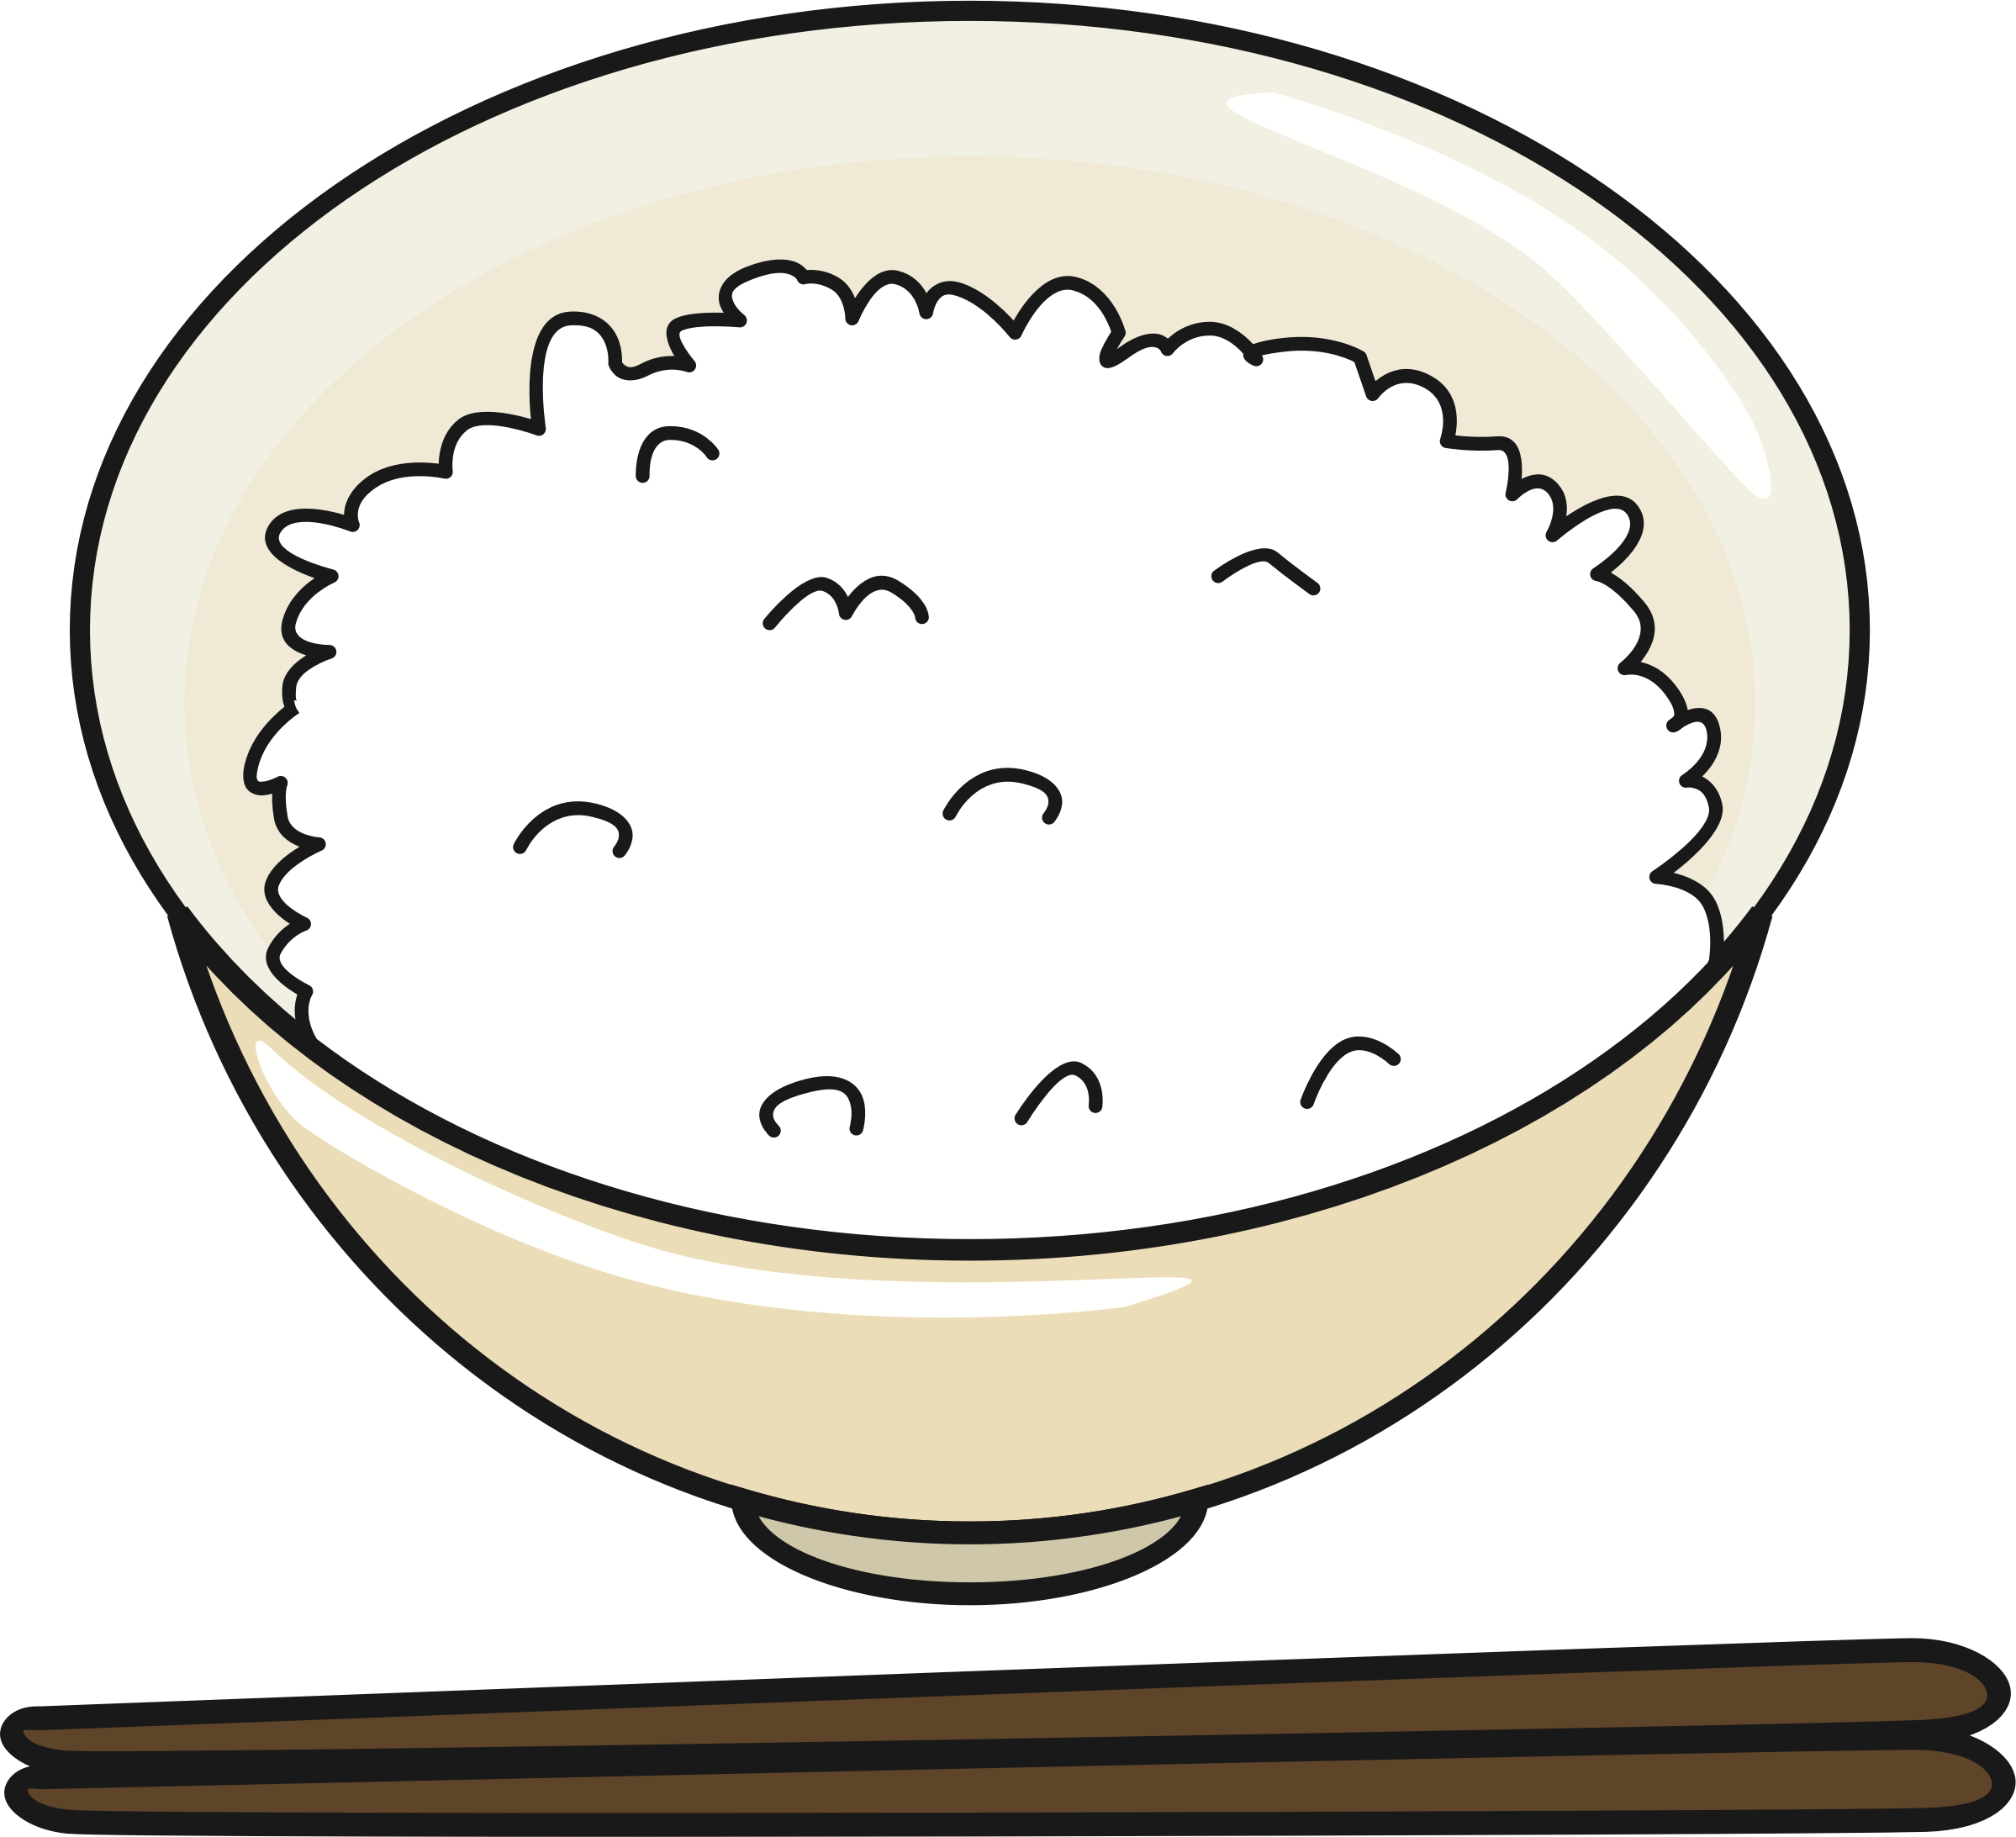 Peanuts clipart bowl. Rice clip art transprent